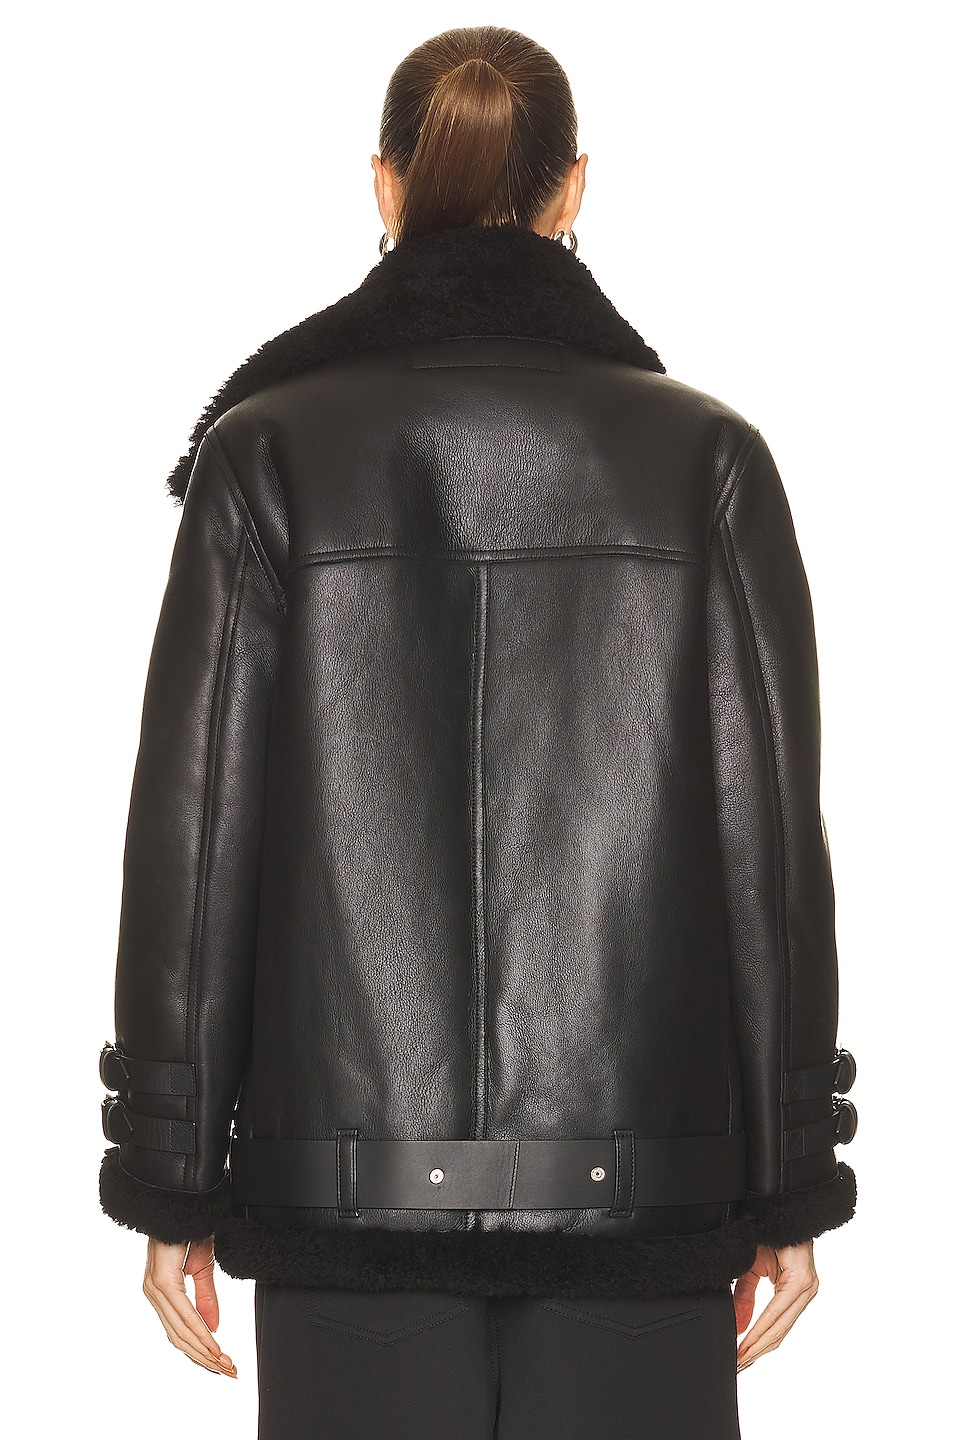 Acne Studios Lined Jacket in Black | FWRD